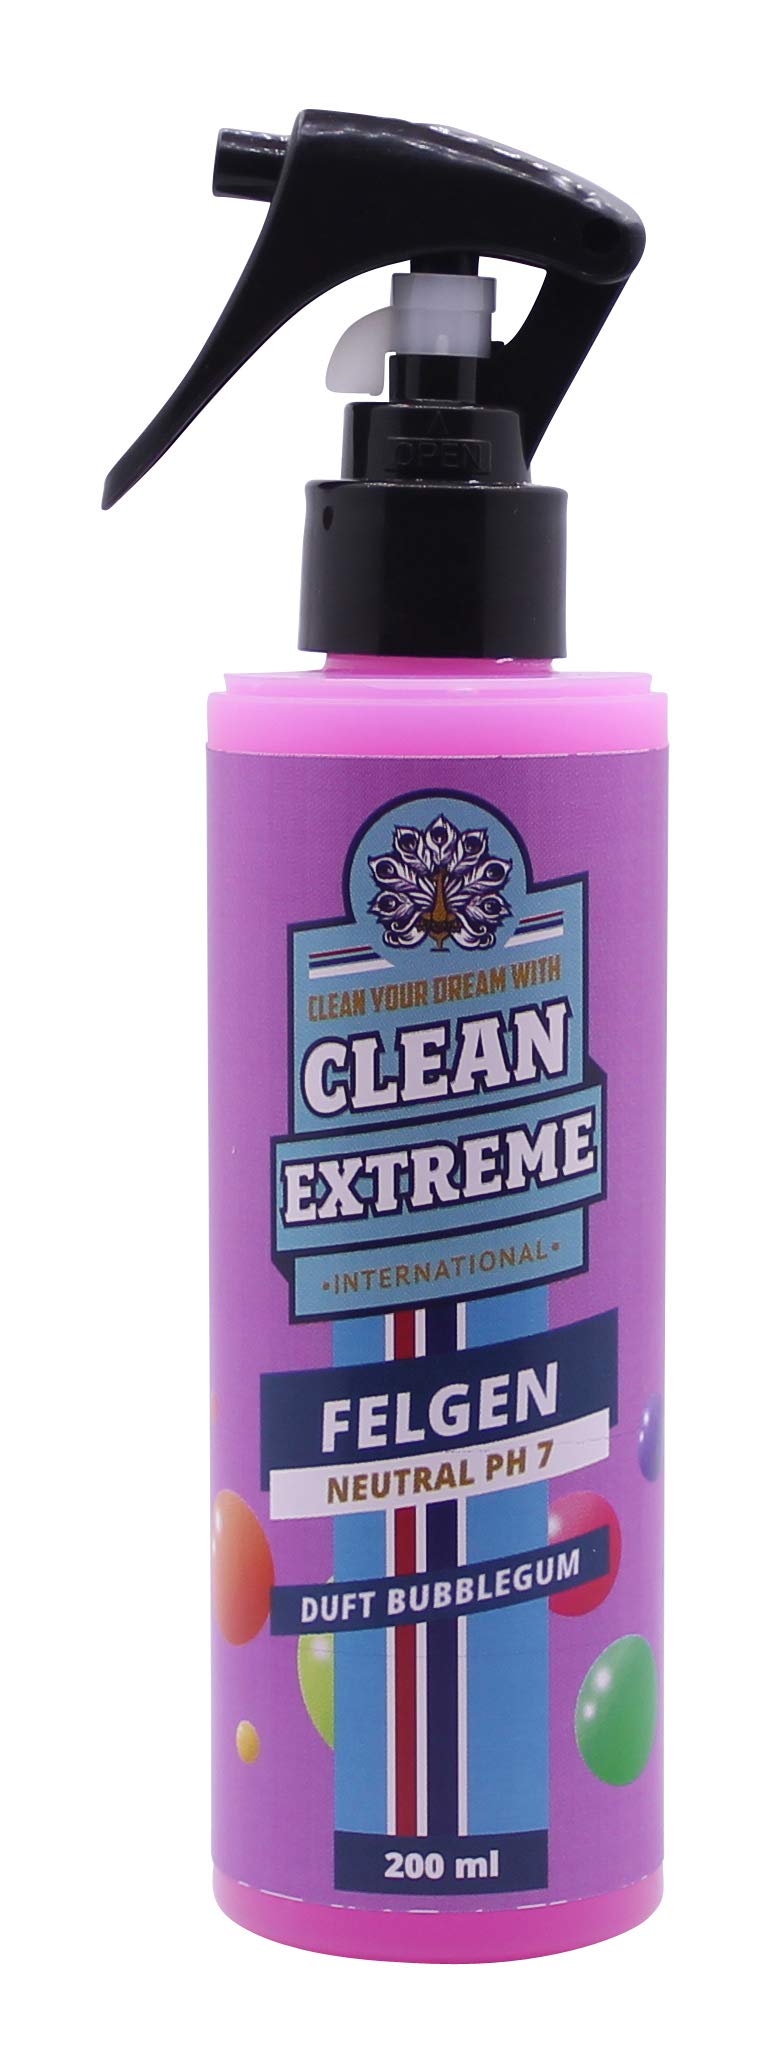 CLEANEXTREME Felgenreiniger Bubblegum Duft 200 ml Spray - Säurefreier, hochwirksamer Reiniger für Alufelgen - mit Farbumschlag Farbindikator Farbwechsel von CLEANEXTREME